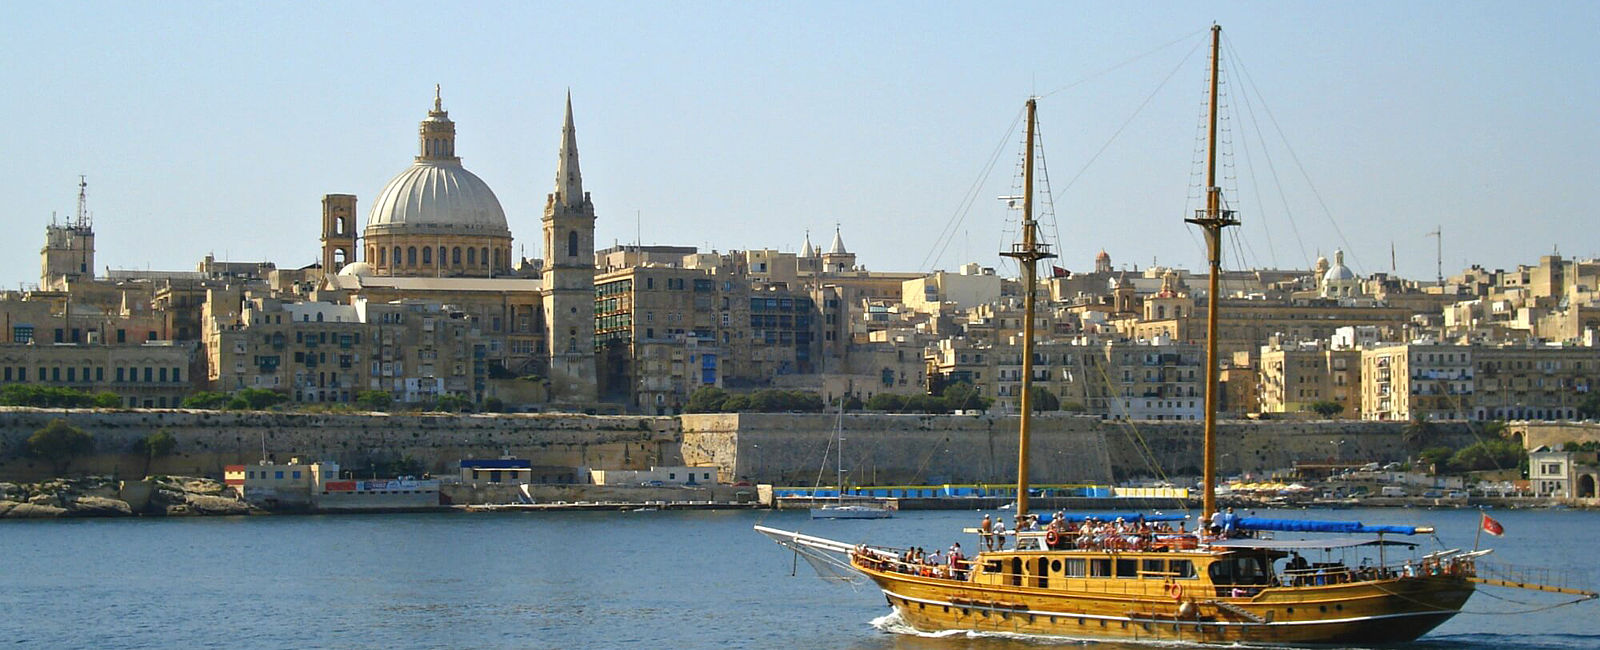 GRATULANTEN
 Vorhang auf für Valletta! 
